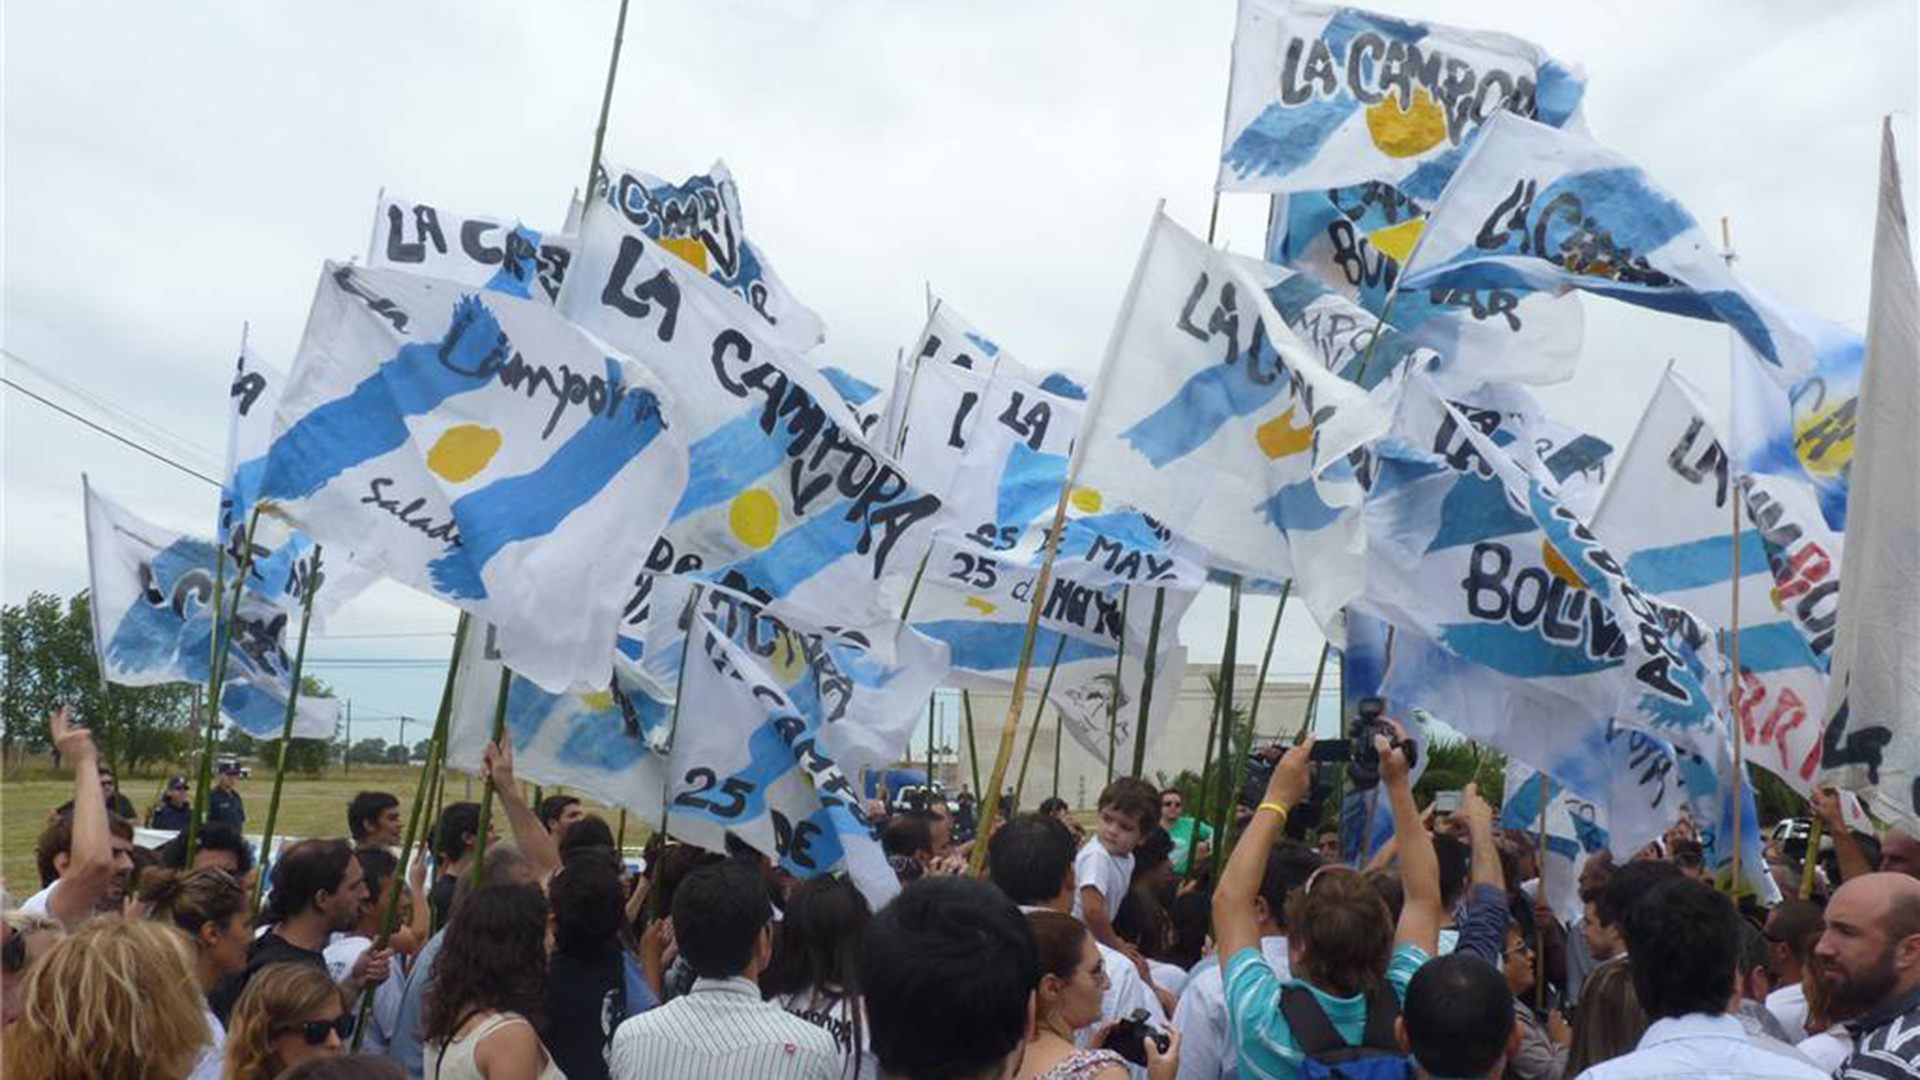 El acto central de Plaza de Mayo estará encabezado por el diputado Máximo Kirchner, presidente del PJ bonaerense y líder de La Cámpora